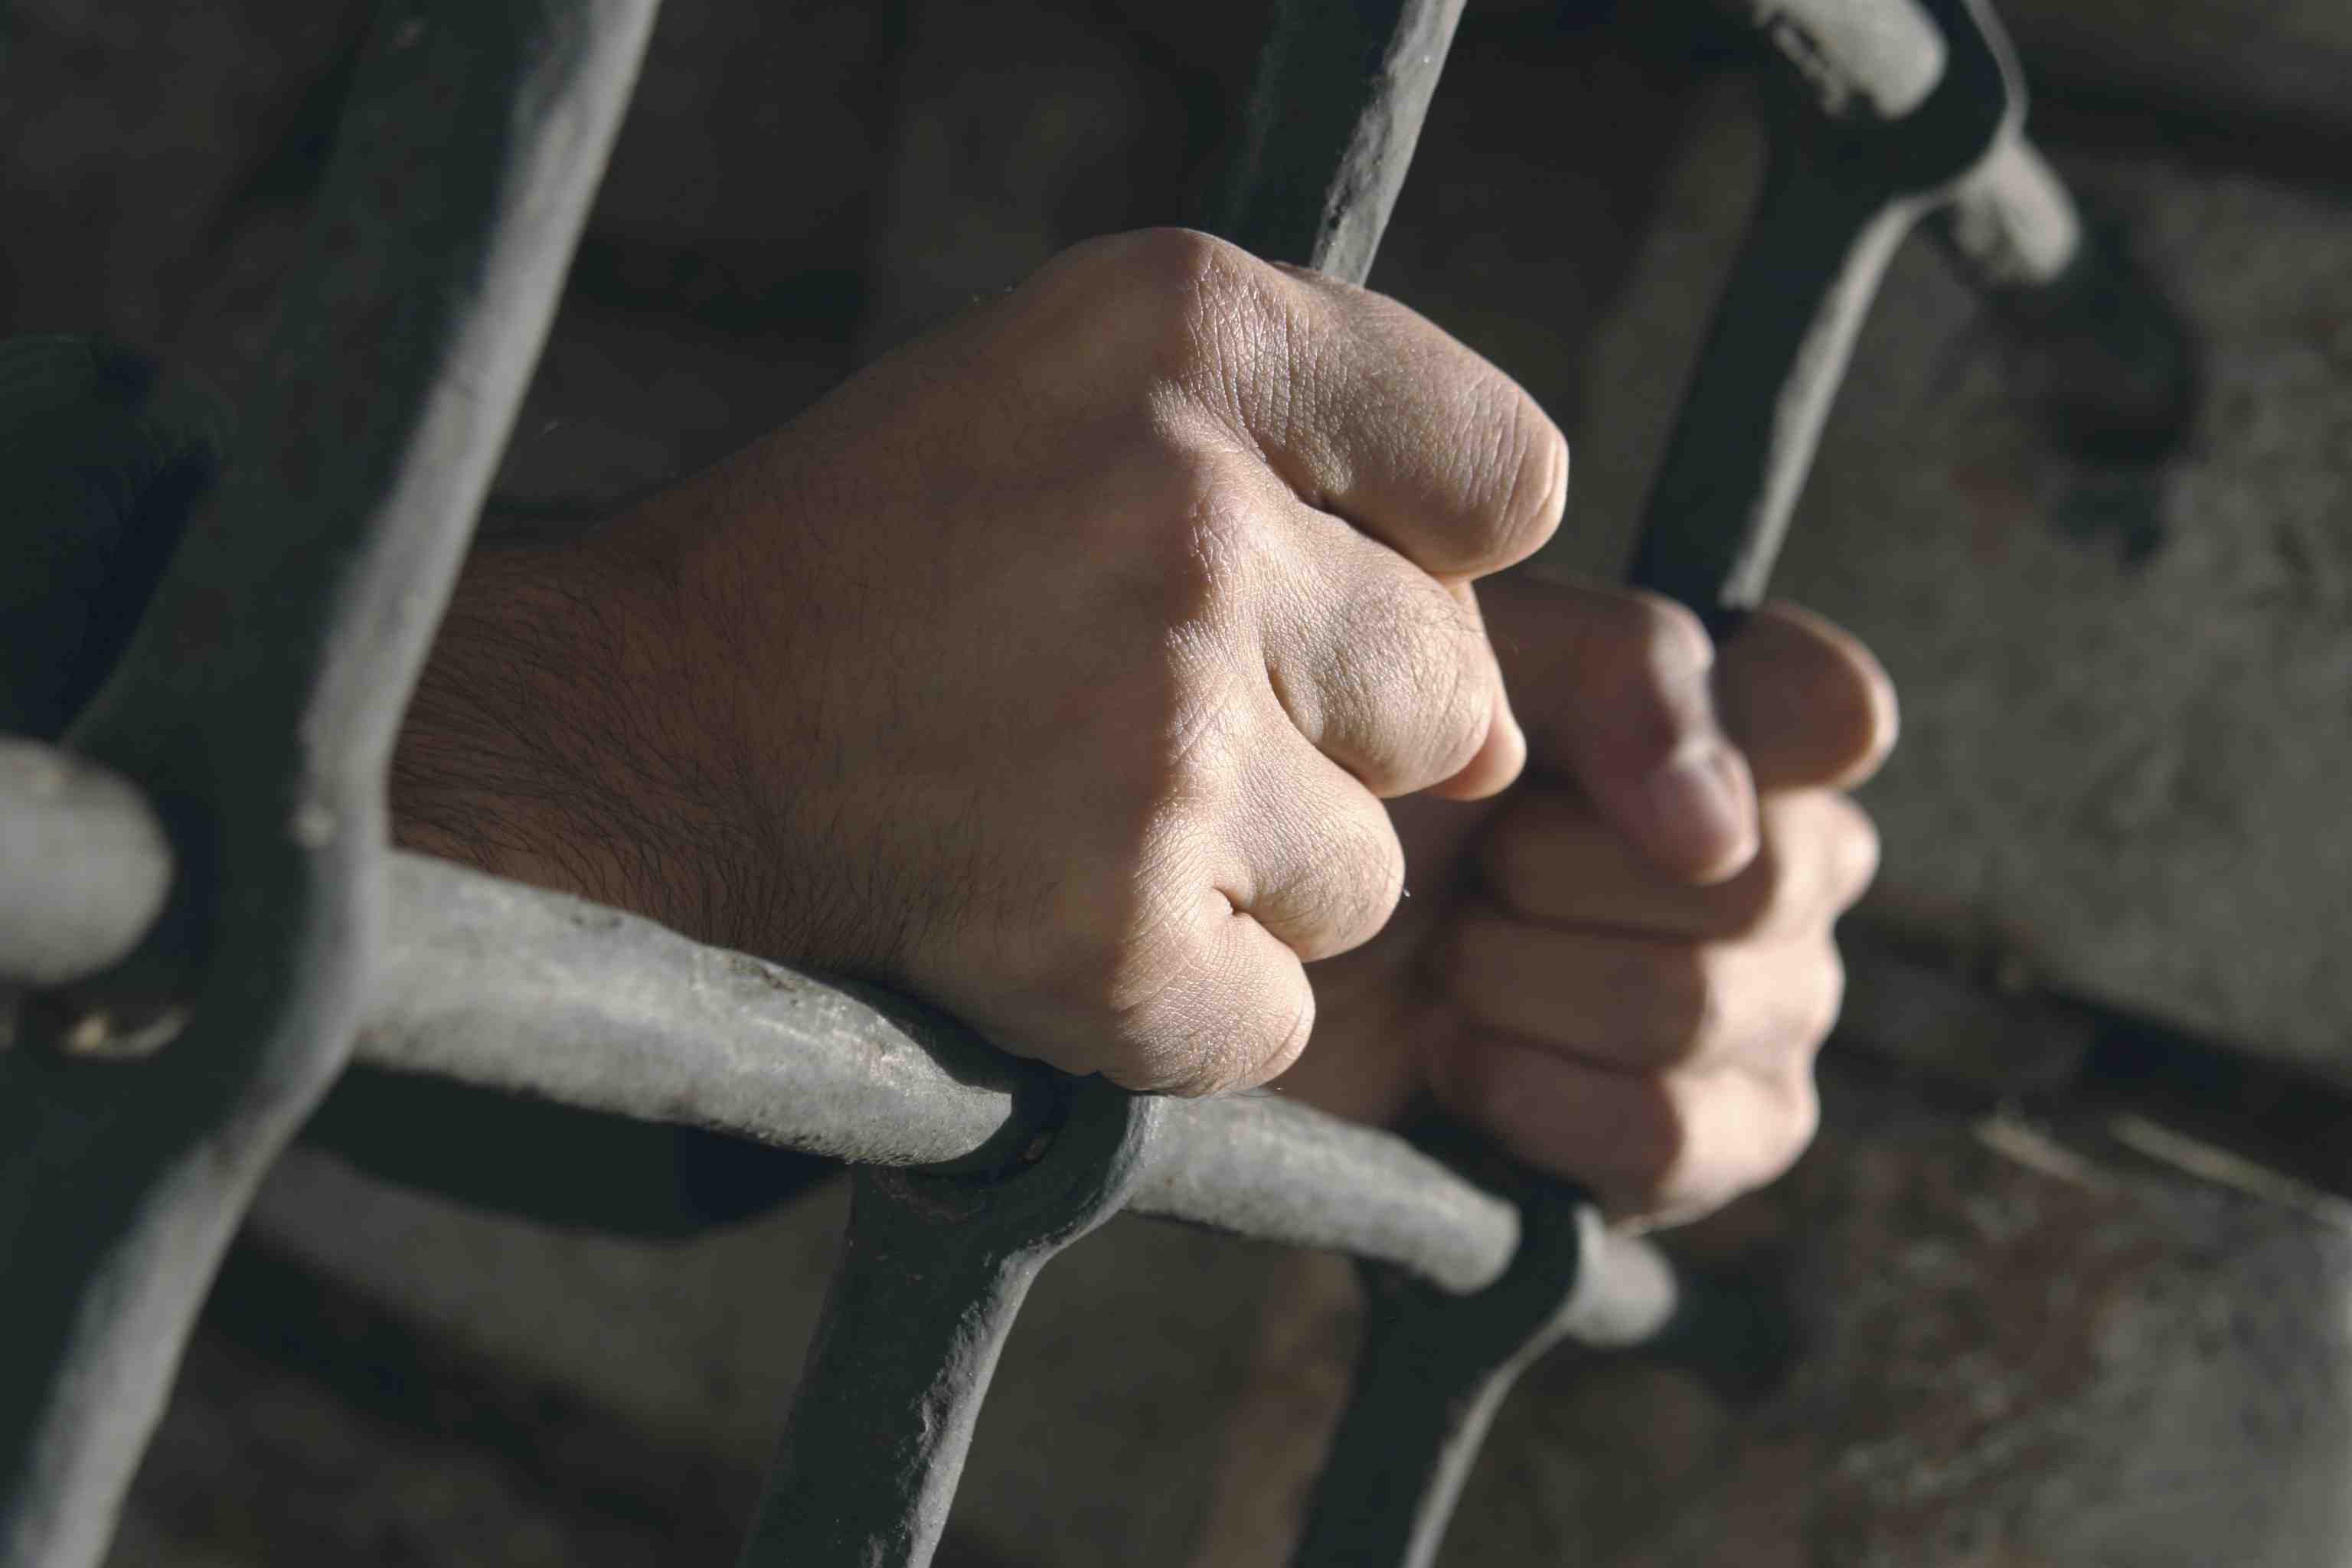 النيابة العامة تفرج عن 234 سجين معسر بعد دفع ما عليهم من فاعلي الخير